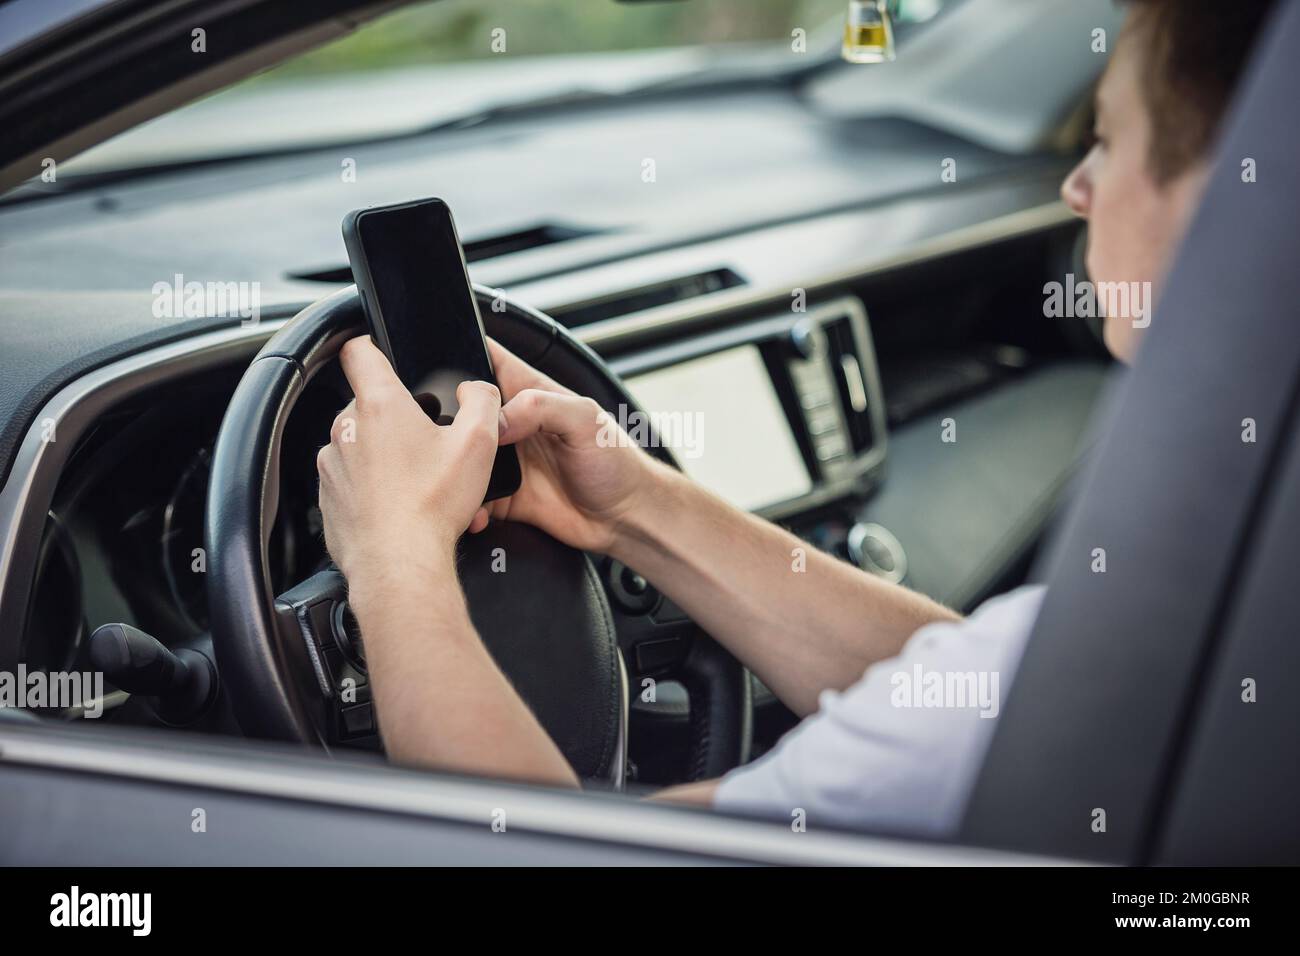 Il giovane conducente ha distratto dal telefono mentre si trovava davanti al volante, utilizzando lo smartphone con una mano durante la guida. Situazione di rischio e pericolo Foto Stock